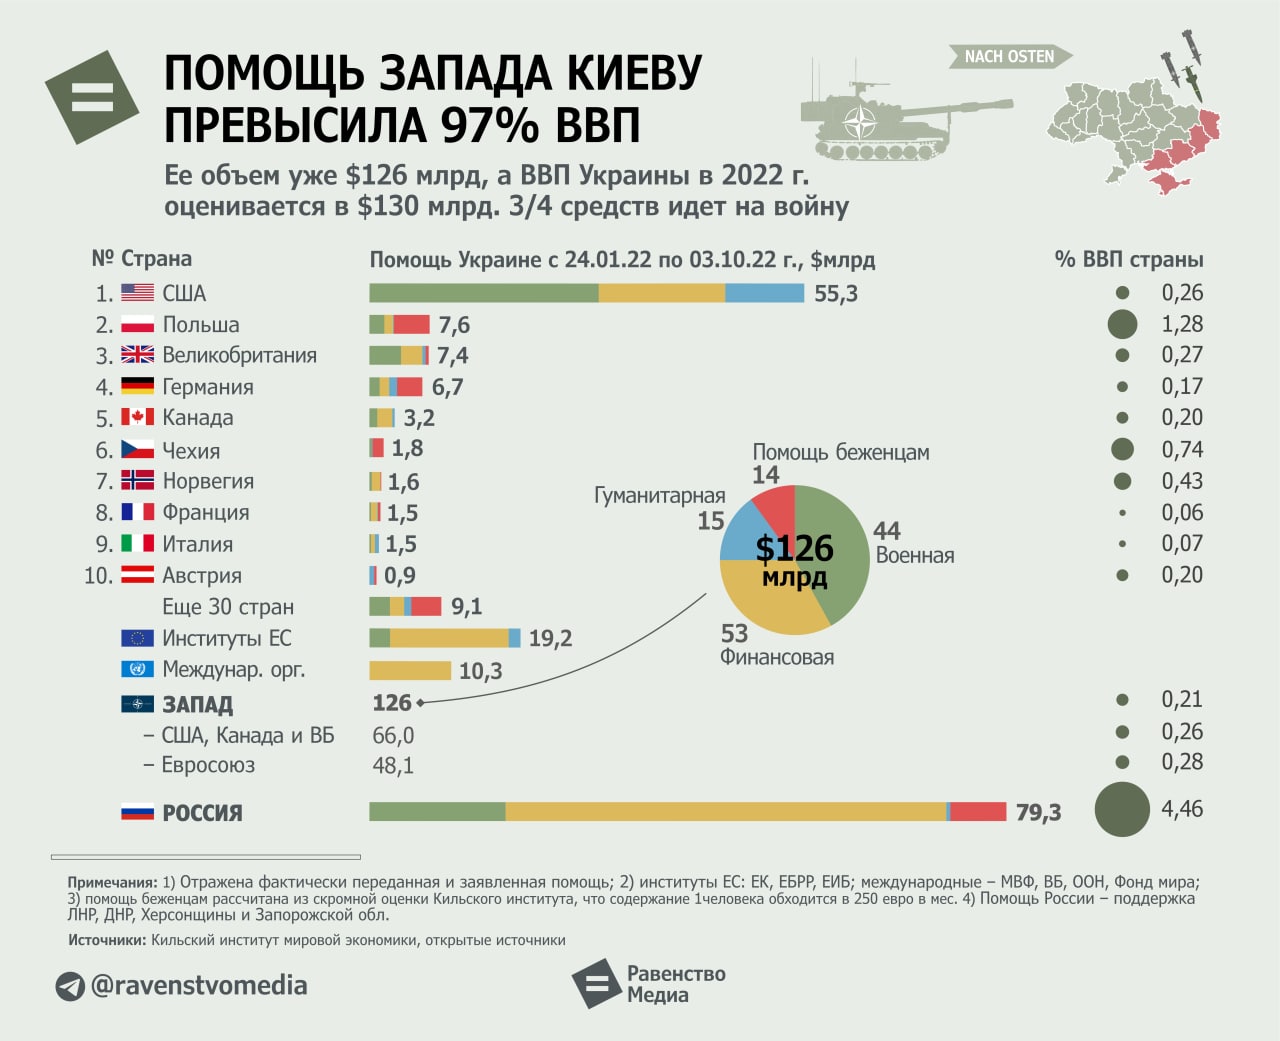 Конец войны с украиной предсказания. ВВП Украины 2022. ВВП Украины в 2022 году. МВФ ВВП стран 2022. Помощь Украине по странам.